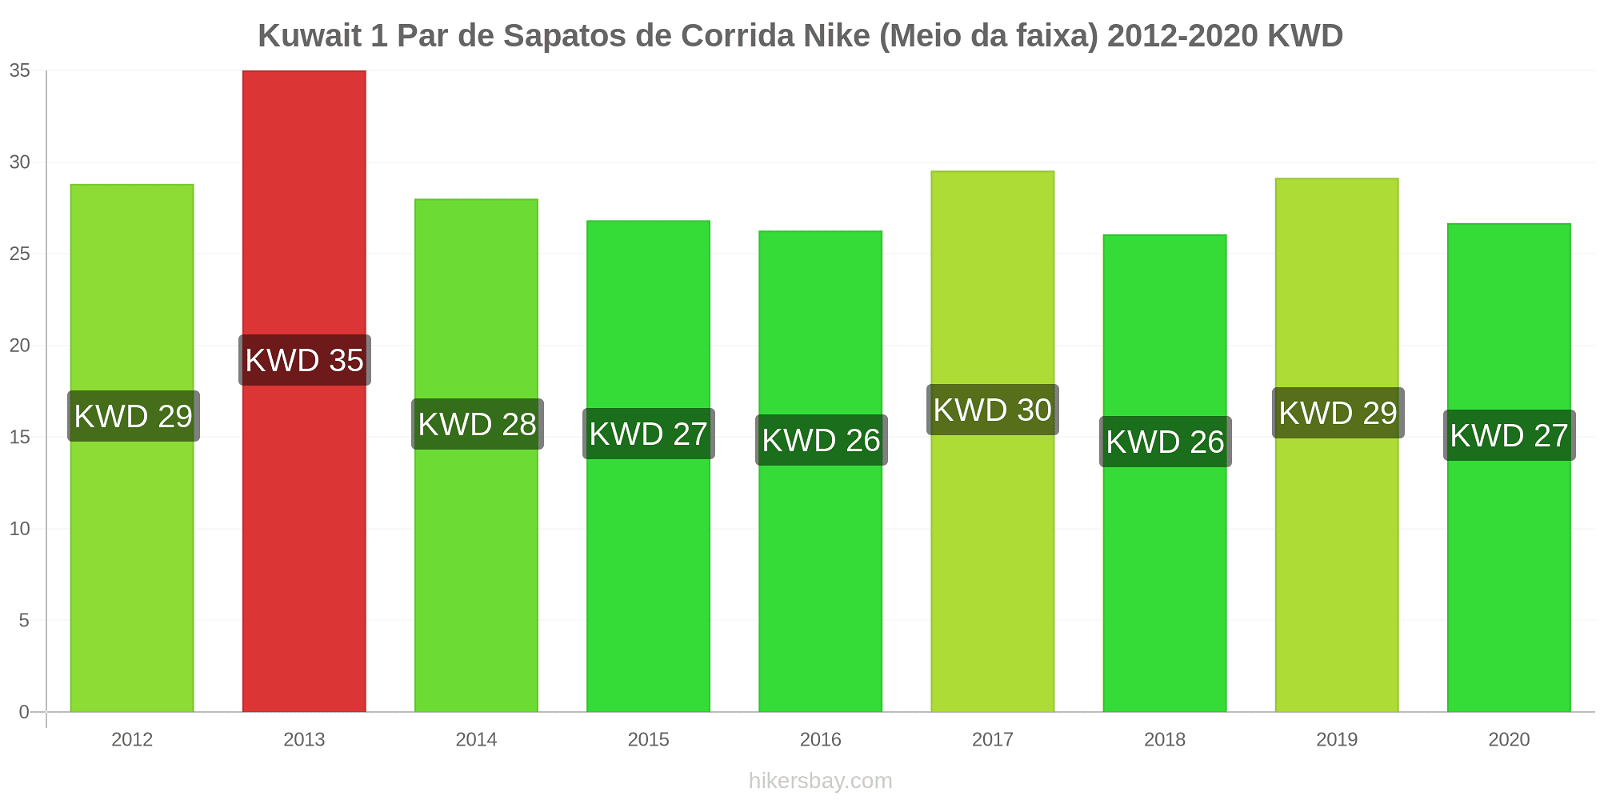 Kuwait variação de preço 1 par de tênis Nike (mid-range) hikersbay.com